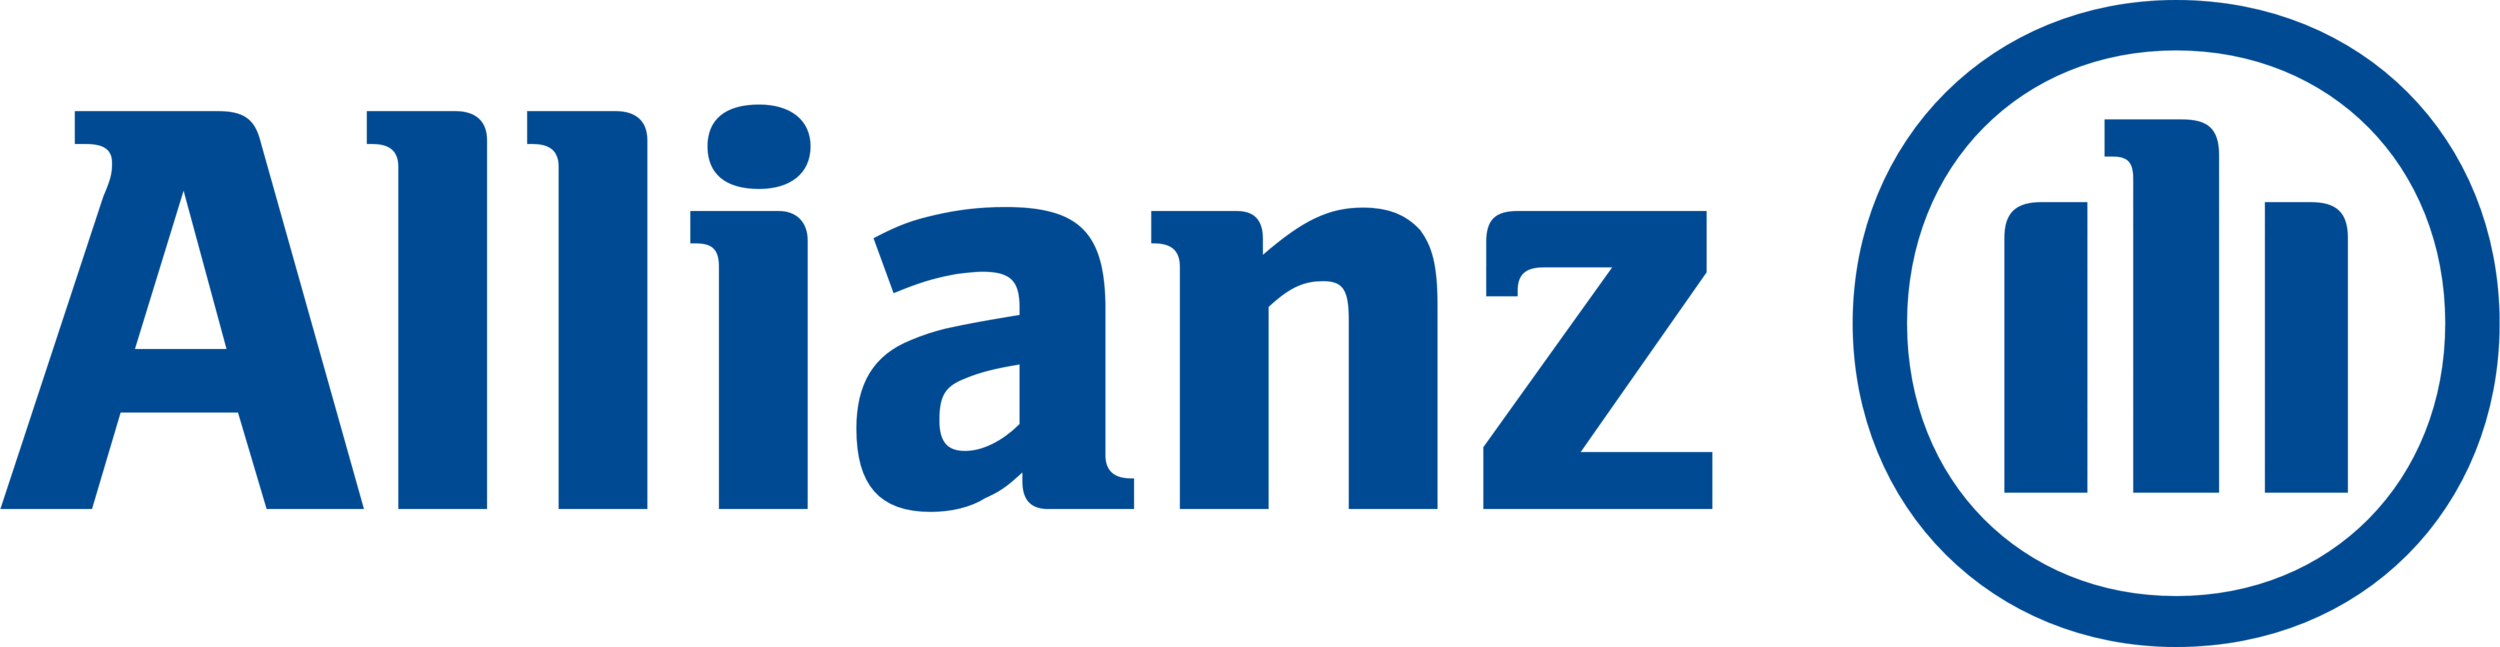 Allianz_logo_logotype.png